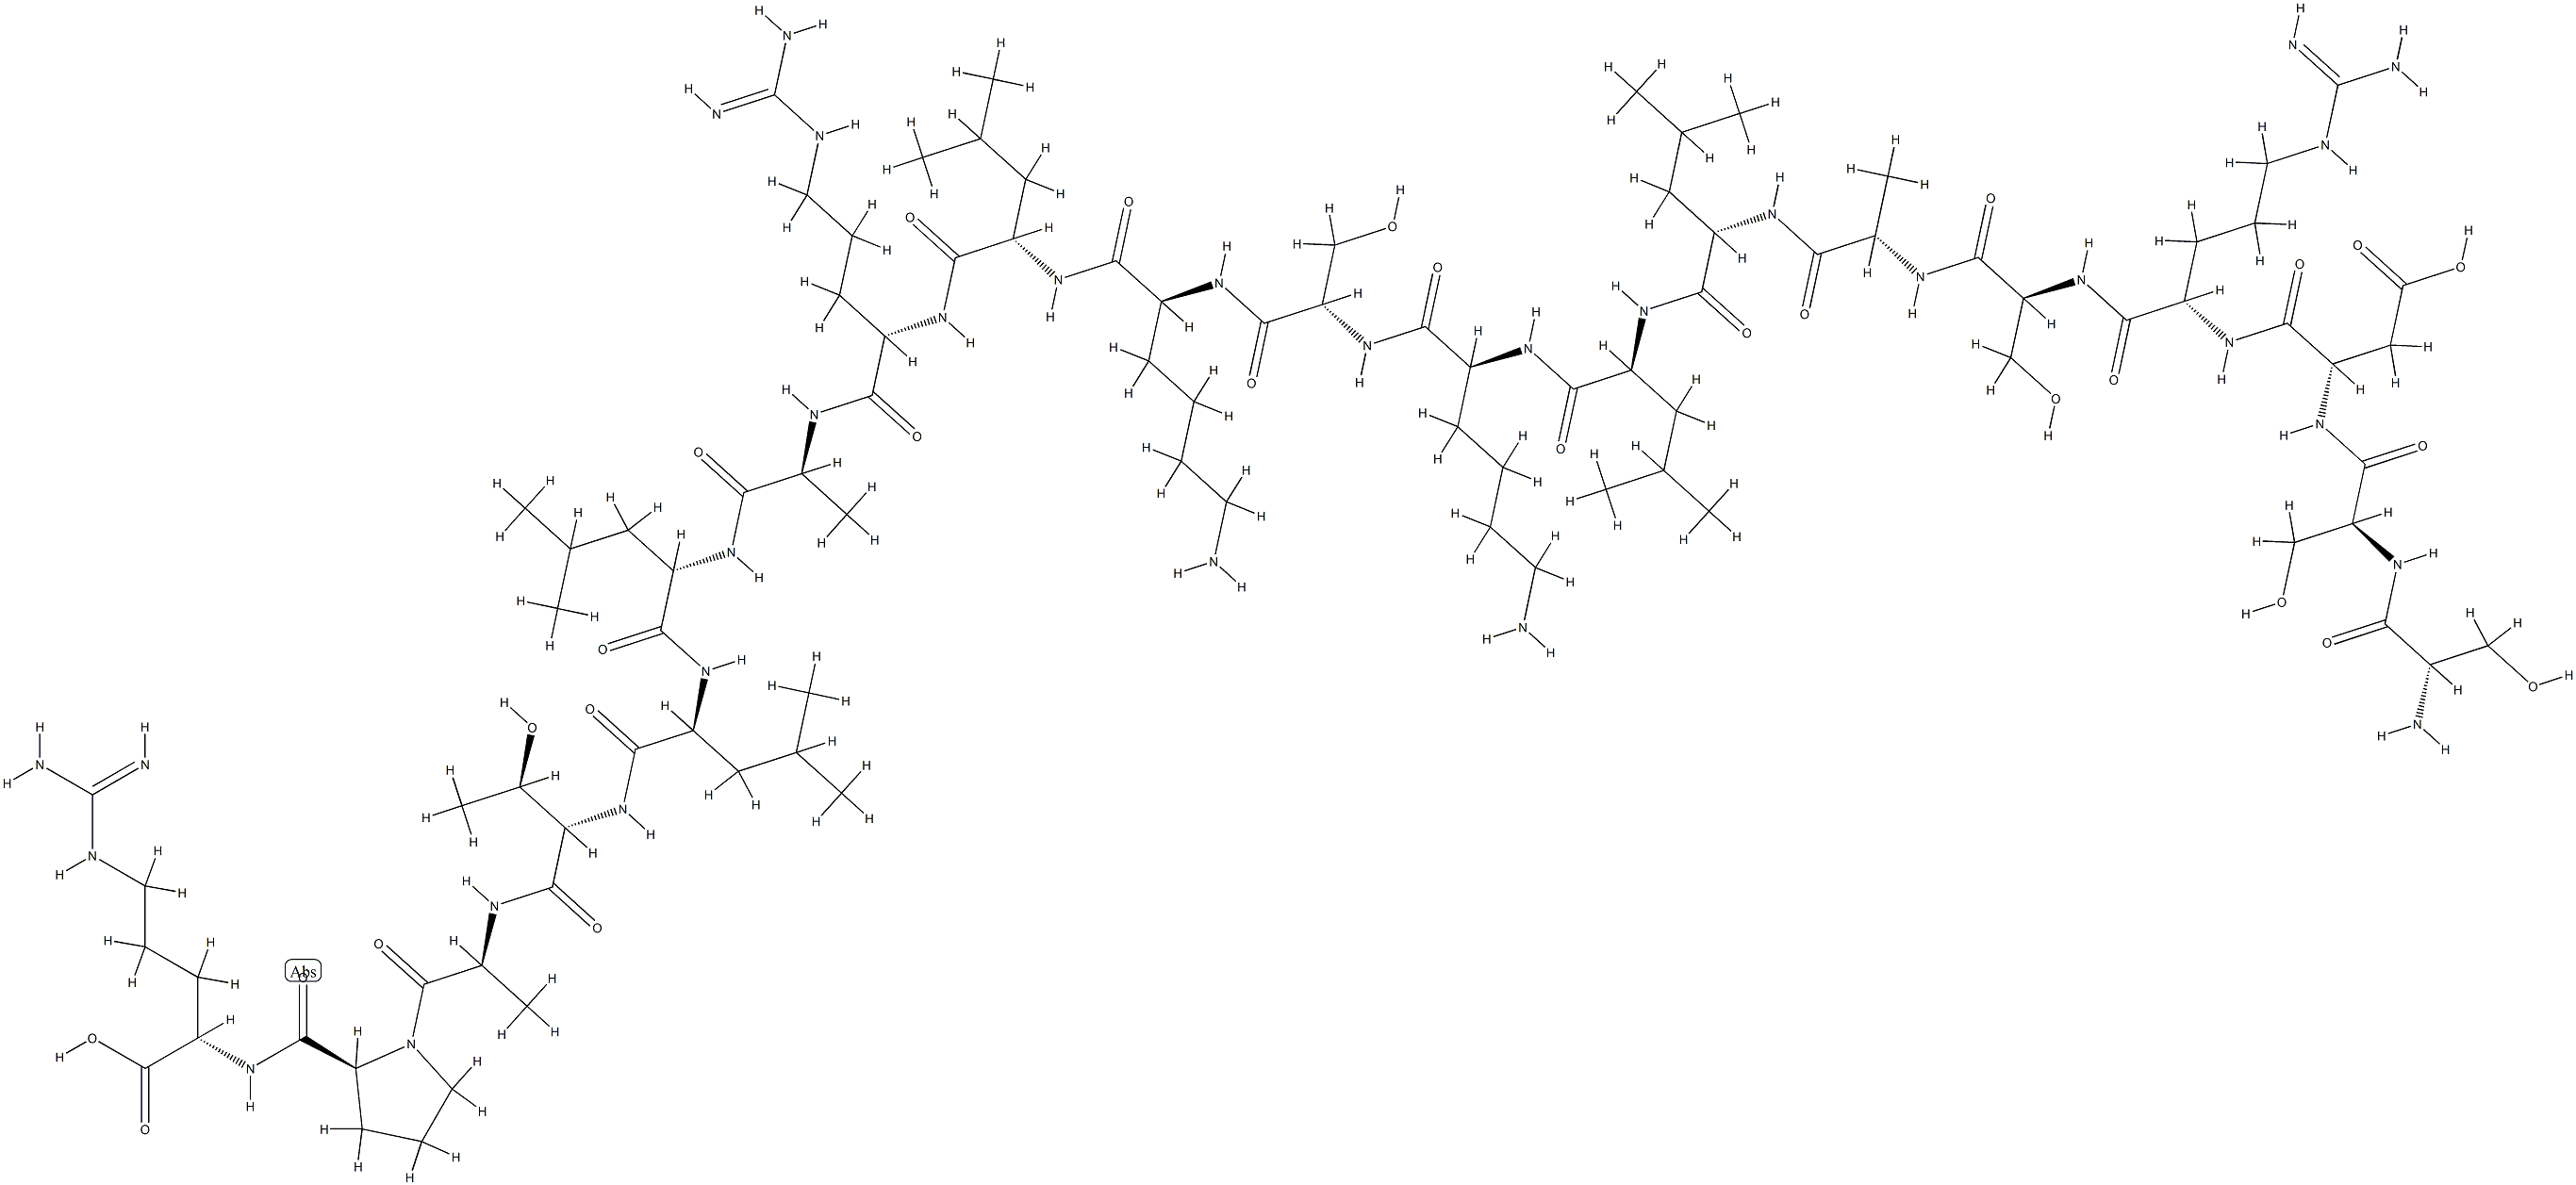 preproatrial natriuretic factor (104-123) 化学構造式